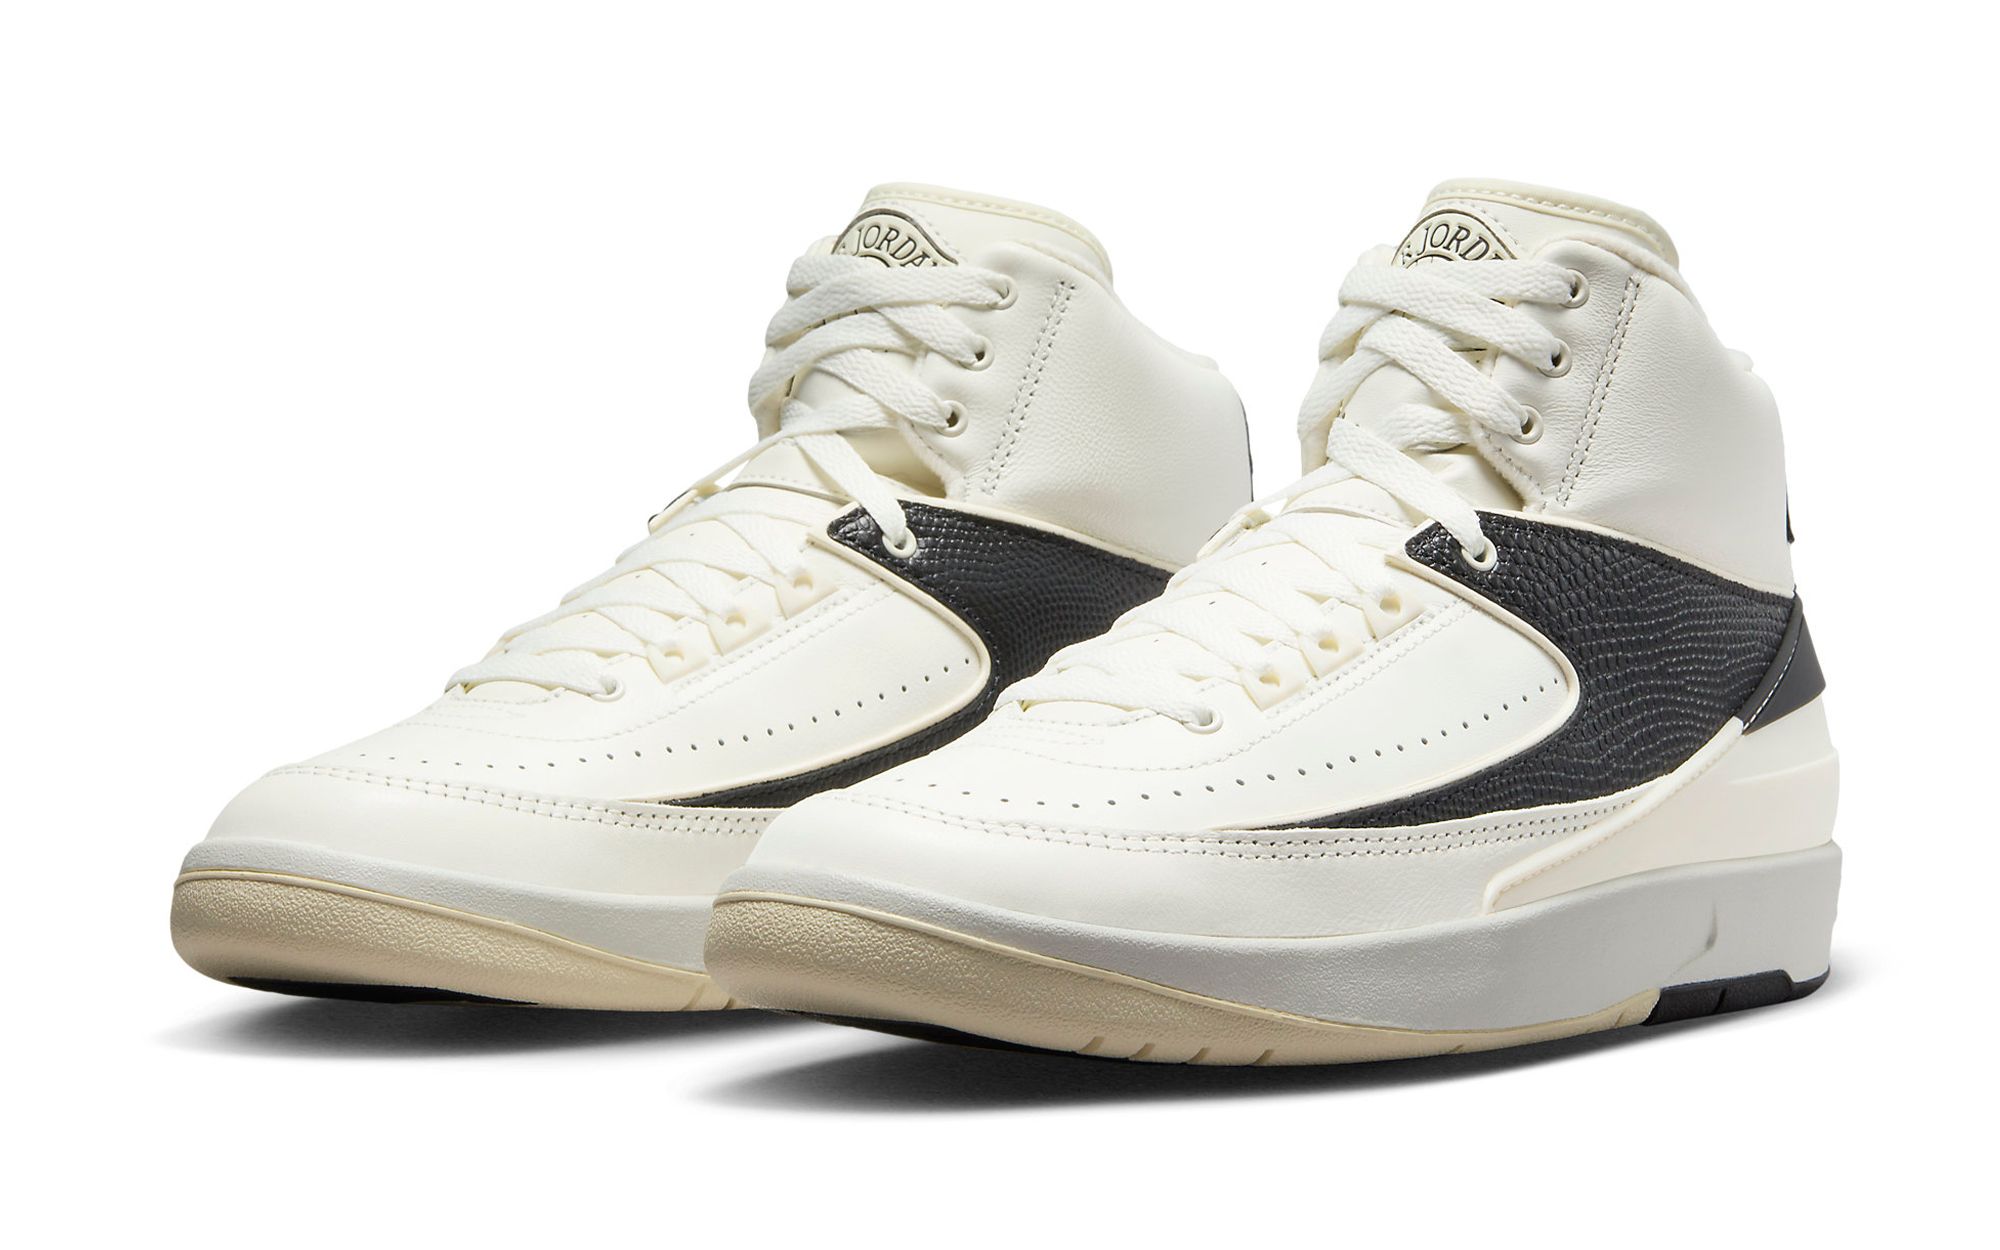 Jordan Air Jordan 2 Retro Black Cement Mens Lifestyle Shoes Black Cement  Gre DR8884-001 – Shoe Palace